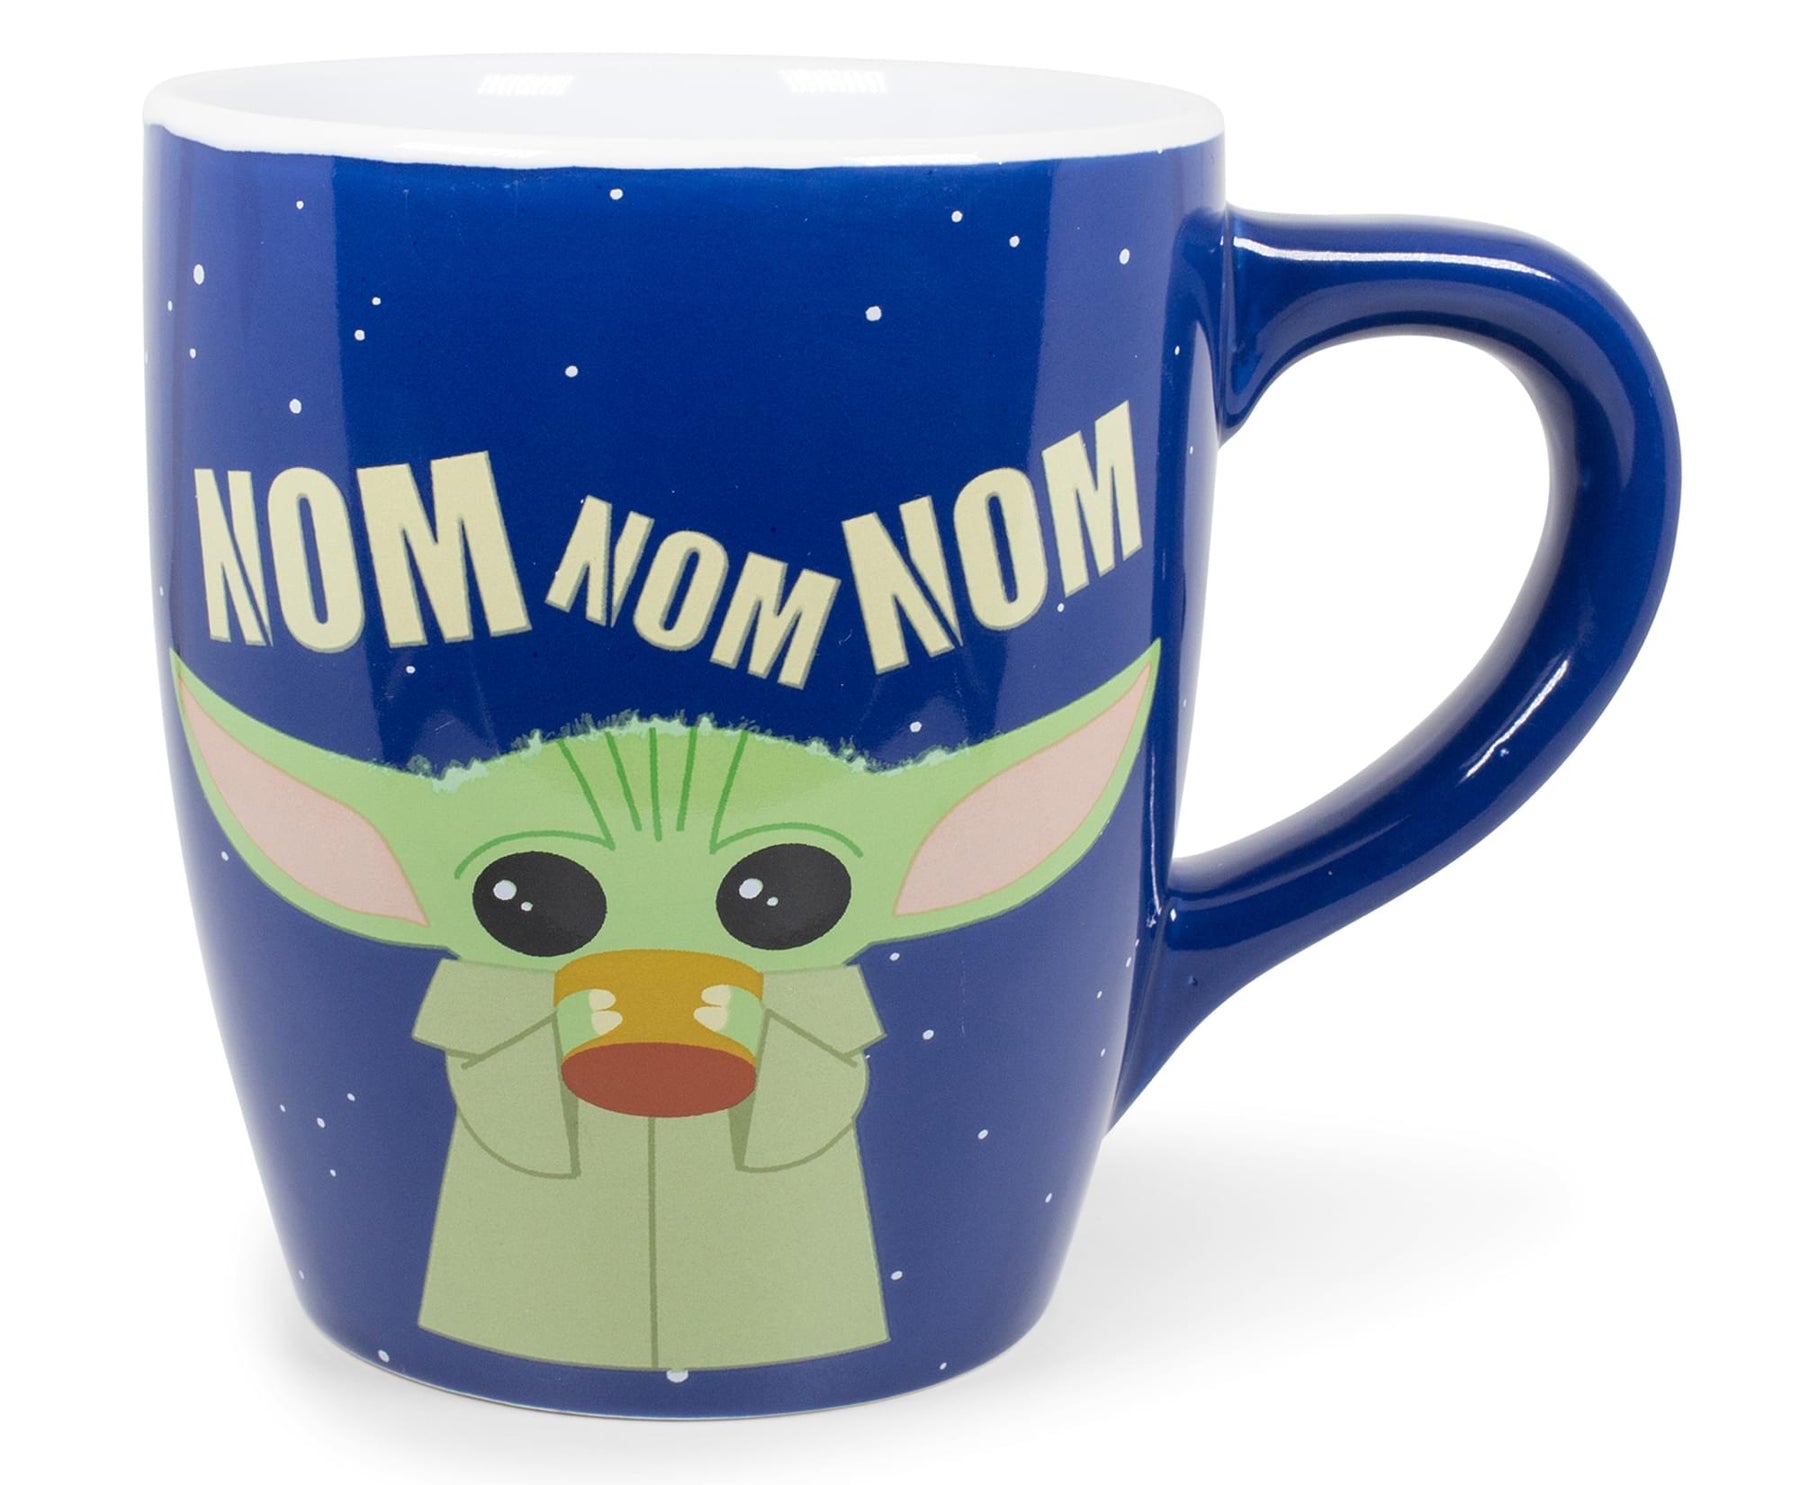 Star Wars: The Mandalorian The Child "Nom Nom Nom" Ceramic Mug | Holds 25 Ounces